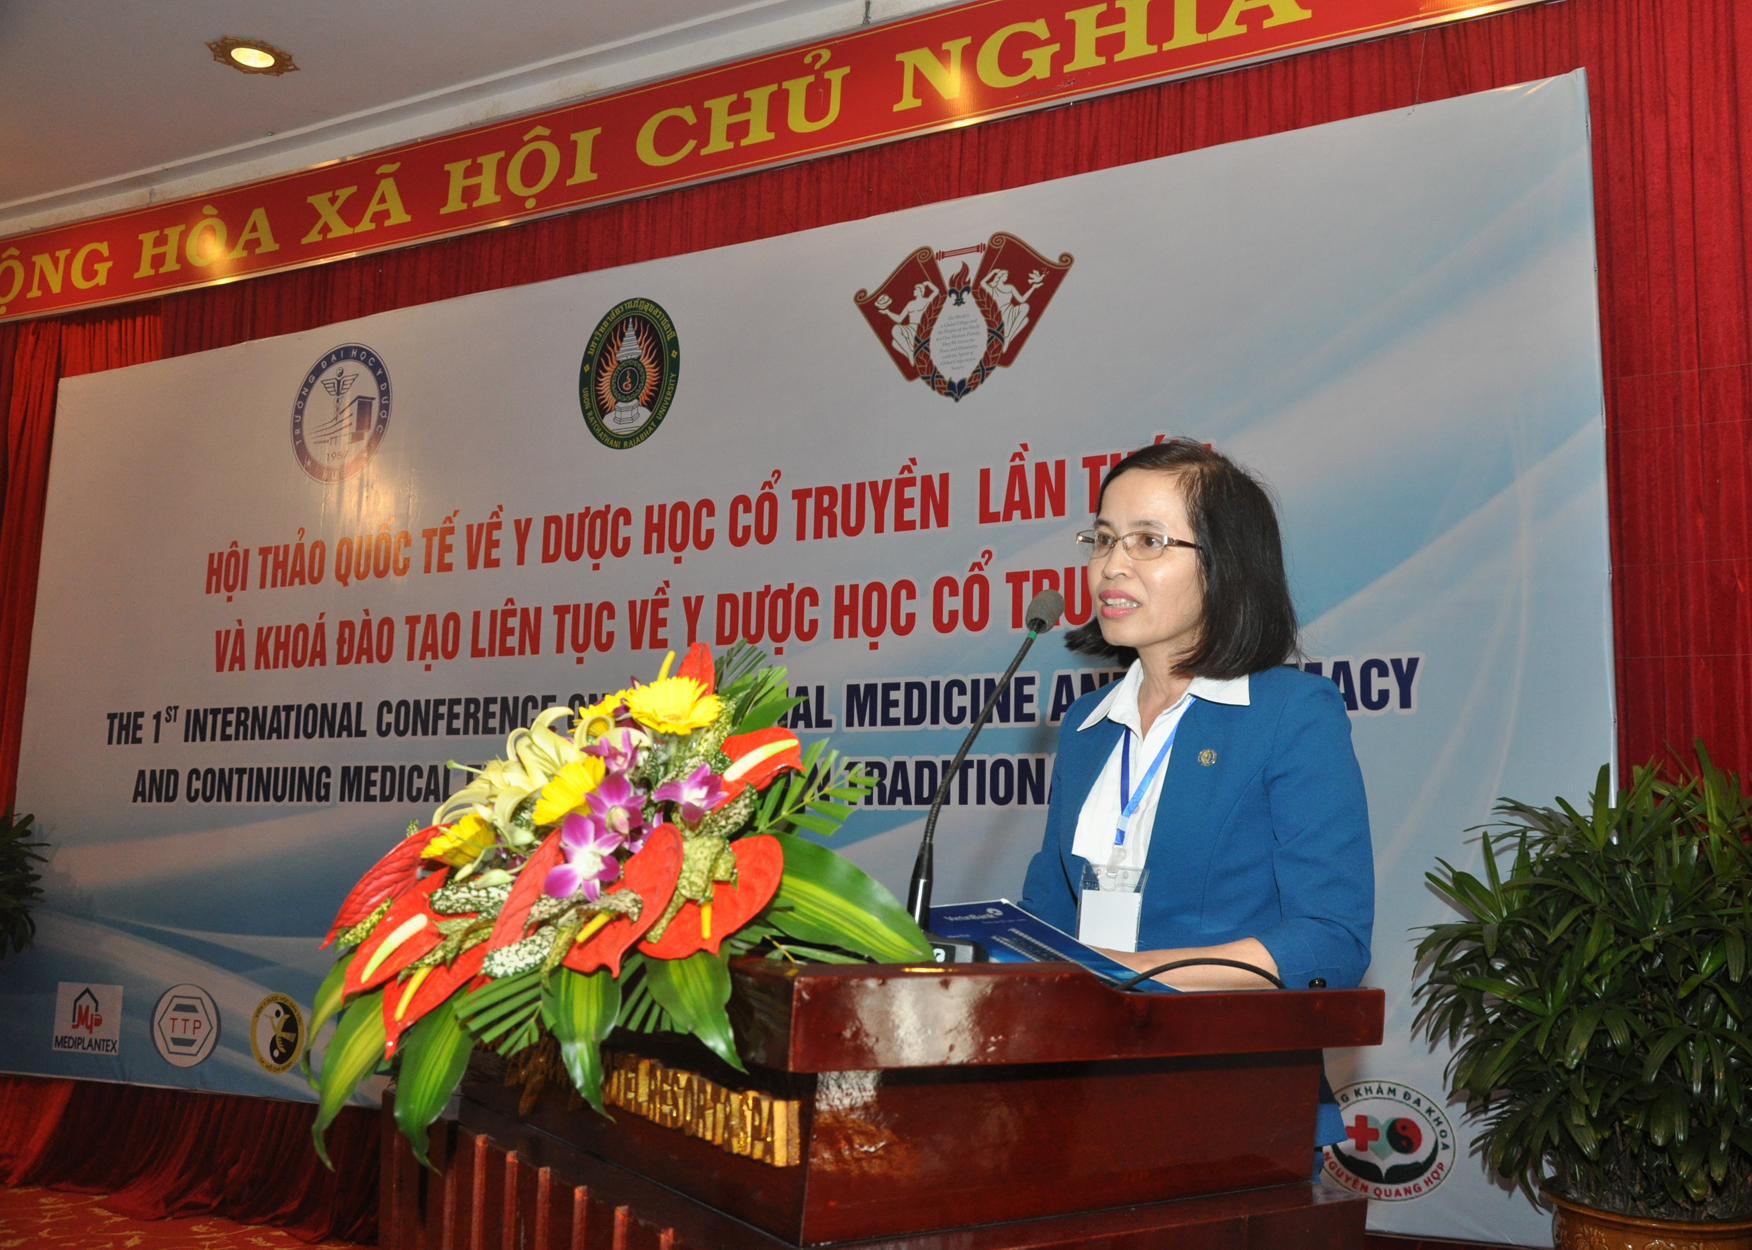 PGS. TS. Nguyễn Thị Tân, Trưởng Khoa Y học cổ truyền - Trường ĐH Y Dược Huế, phát biểu chào mừng tại Hội thảo